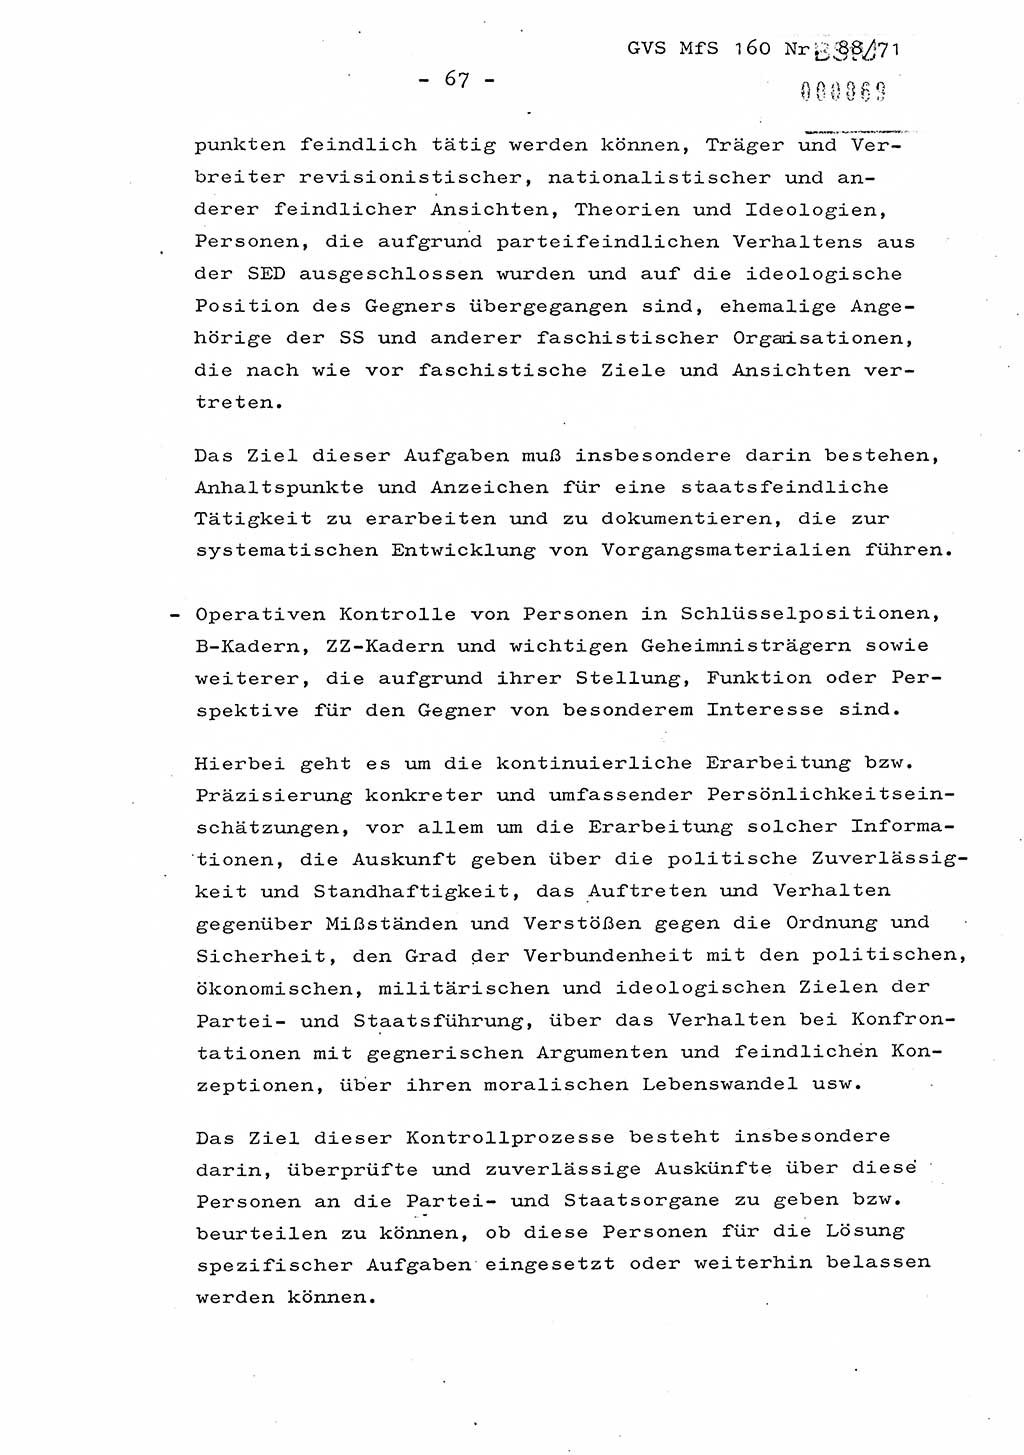 Dissertation Oberstleutnant Josef Schwarz (BV Schwerin), Major Fritz Amm (JHS), Hauptmann Peter Gräßler (JHS), Ministerium für Staatssicherheit (MfS) [Deutsche Demokratische Republik (DDR)], Juristische Hochschule (JHS), Geheime Verschlußsache (GVS) 160-88/71, Potsdam 1972, Seite 67 (Diss. MfS DDR JHS GVS 160-88/71 1972, S. 67)